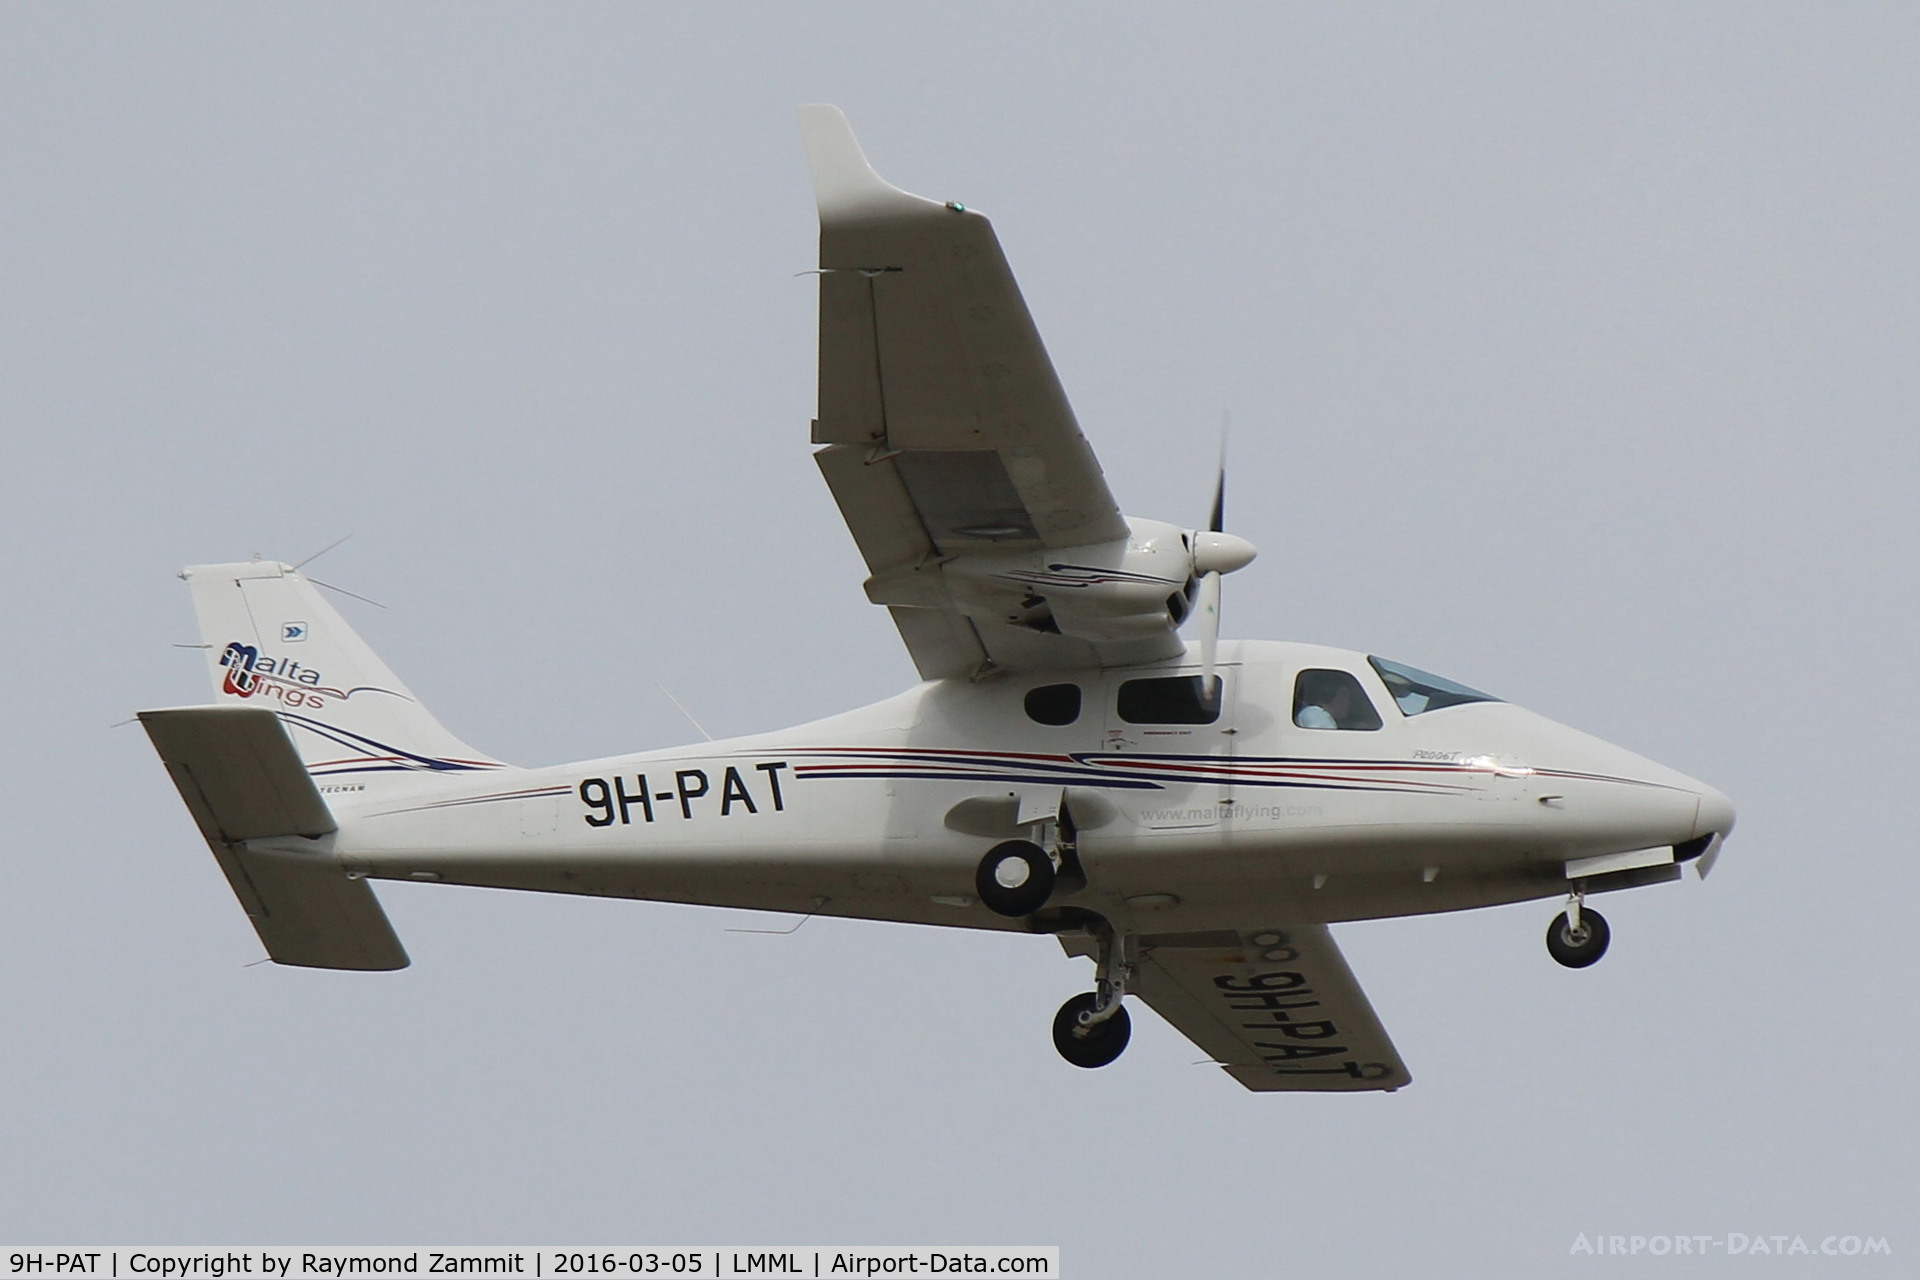 9H-PAT, 2011 Tecnam P-2006T C/N 091, Tecnam P-2006T 9H-PAT Malta Wings